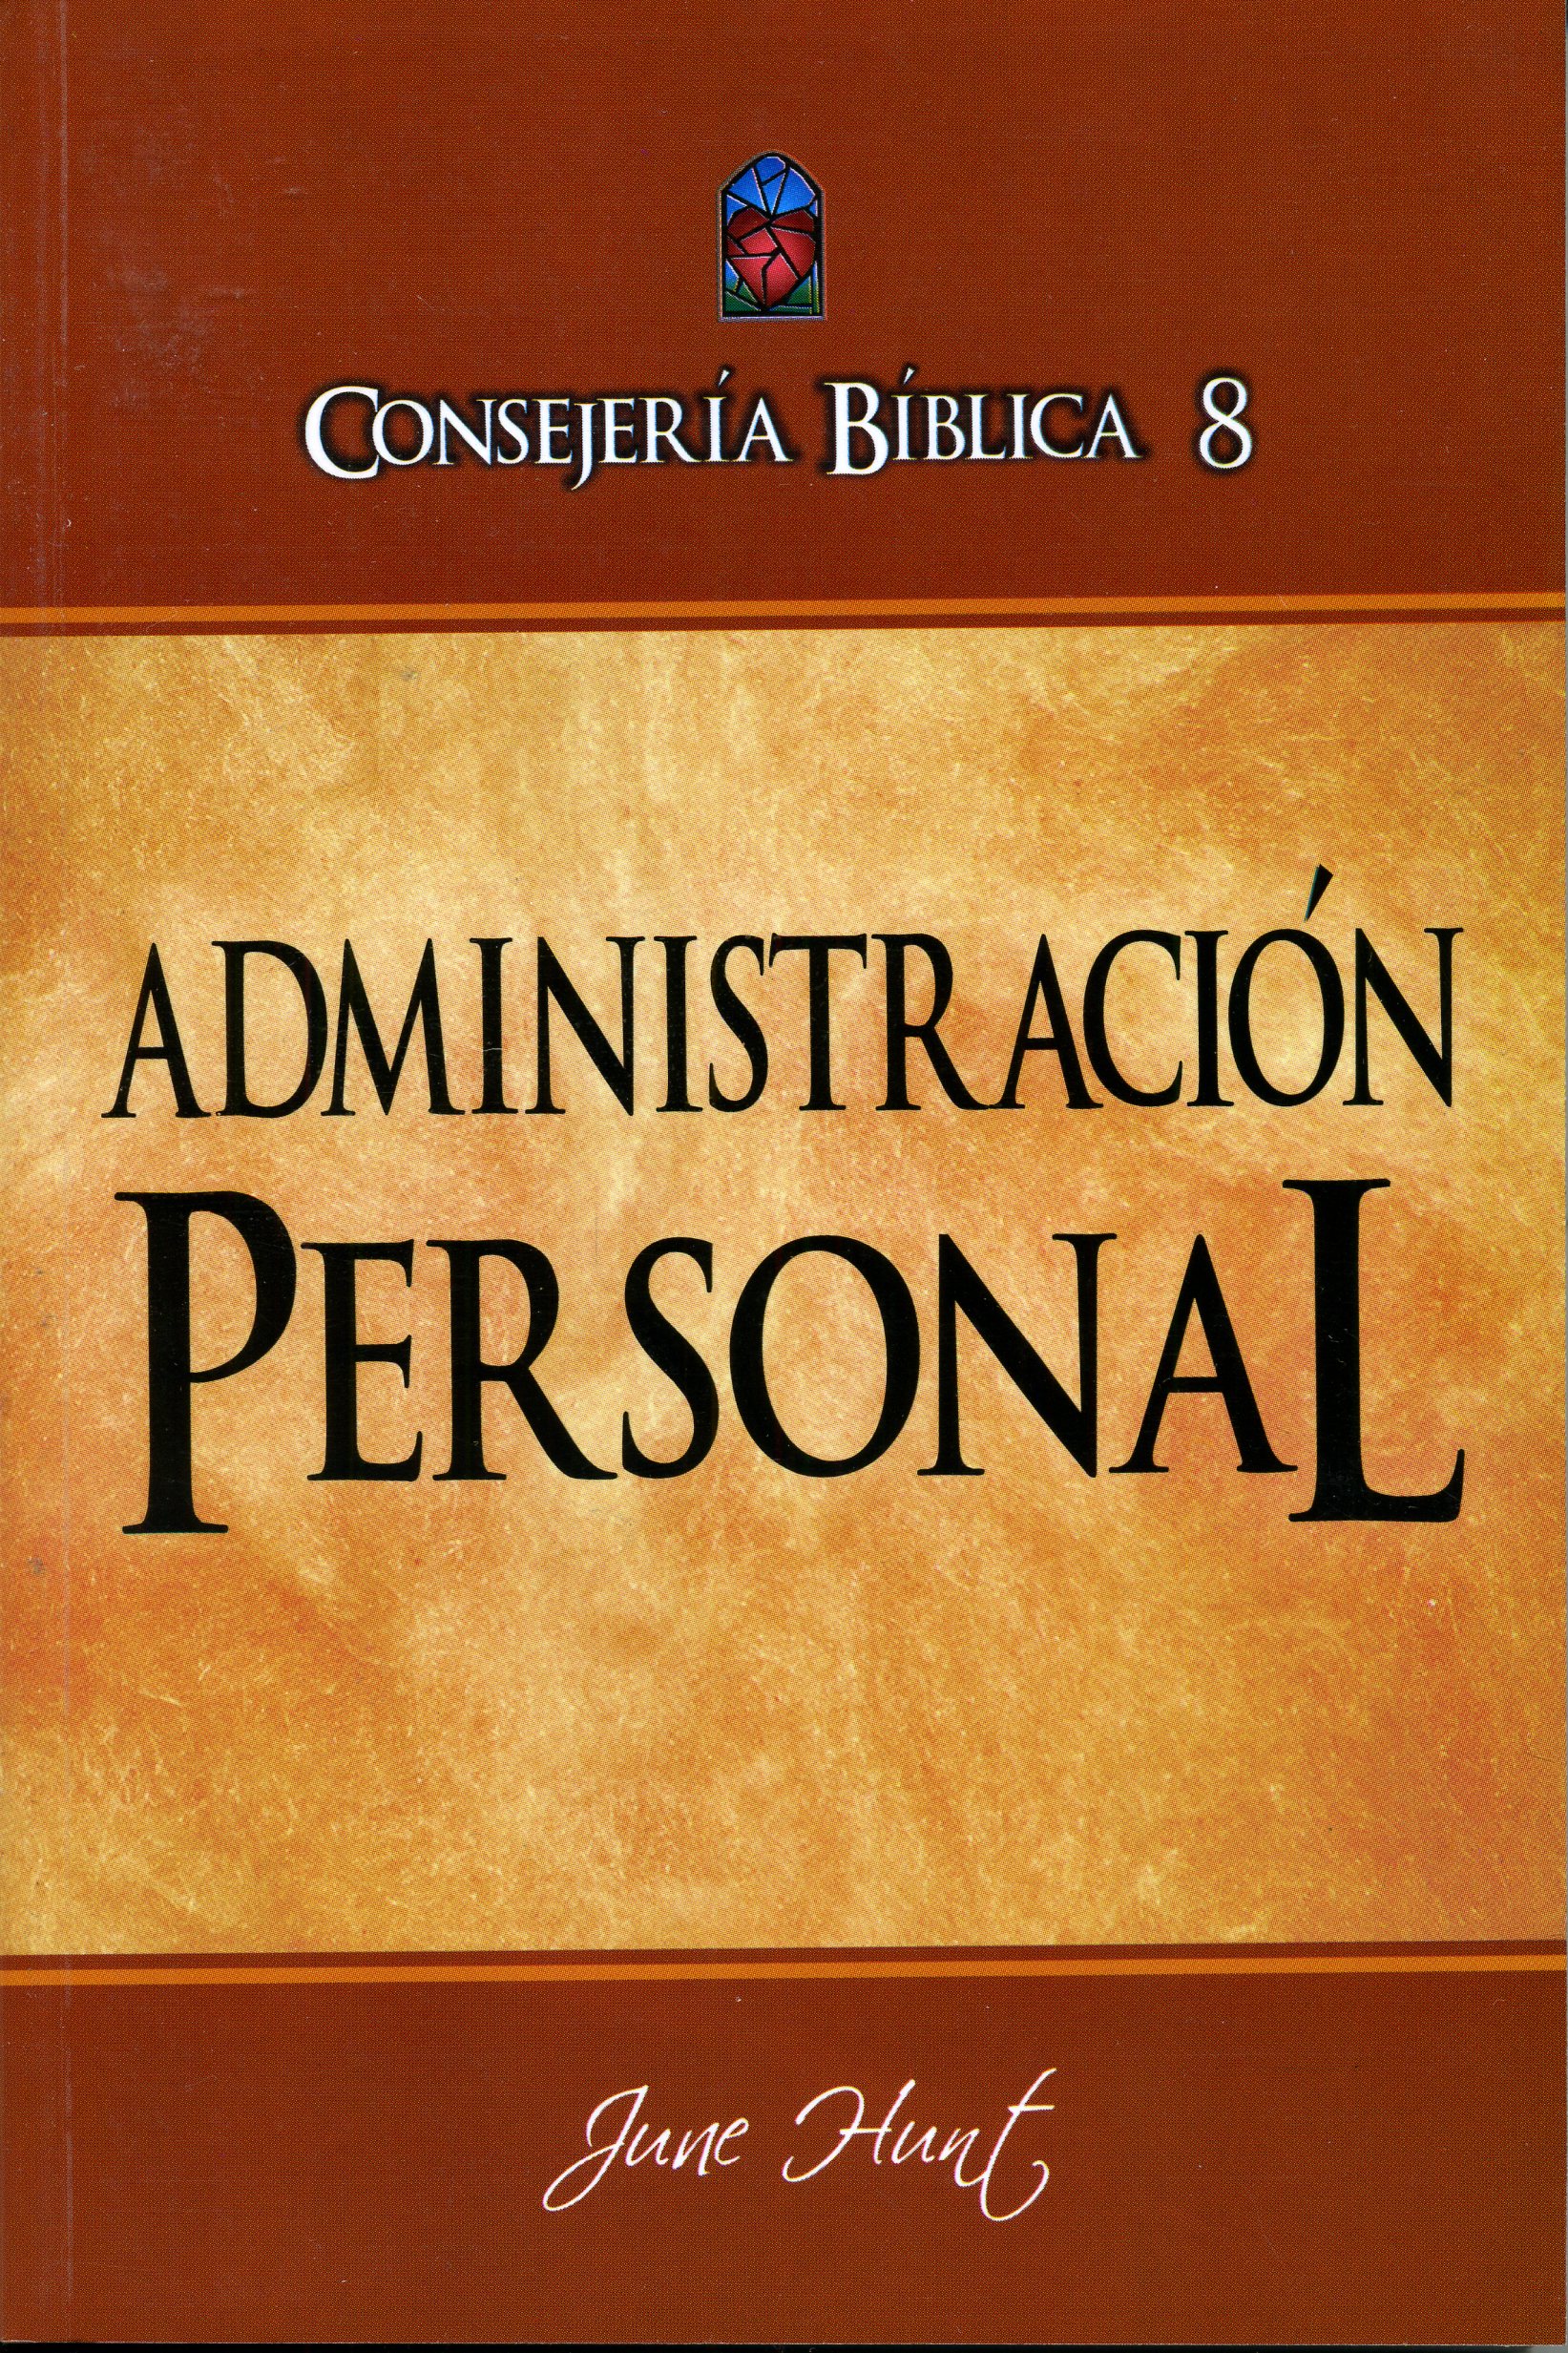 Consejería Bíblica 8 - Administración personal